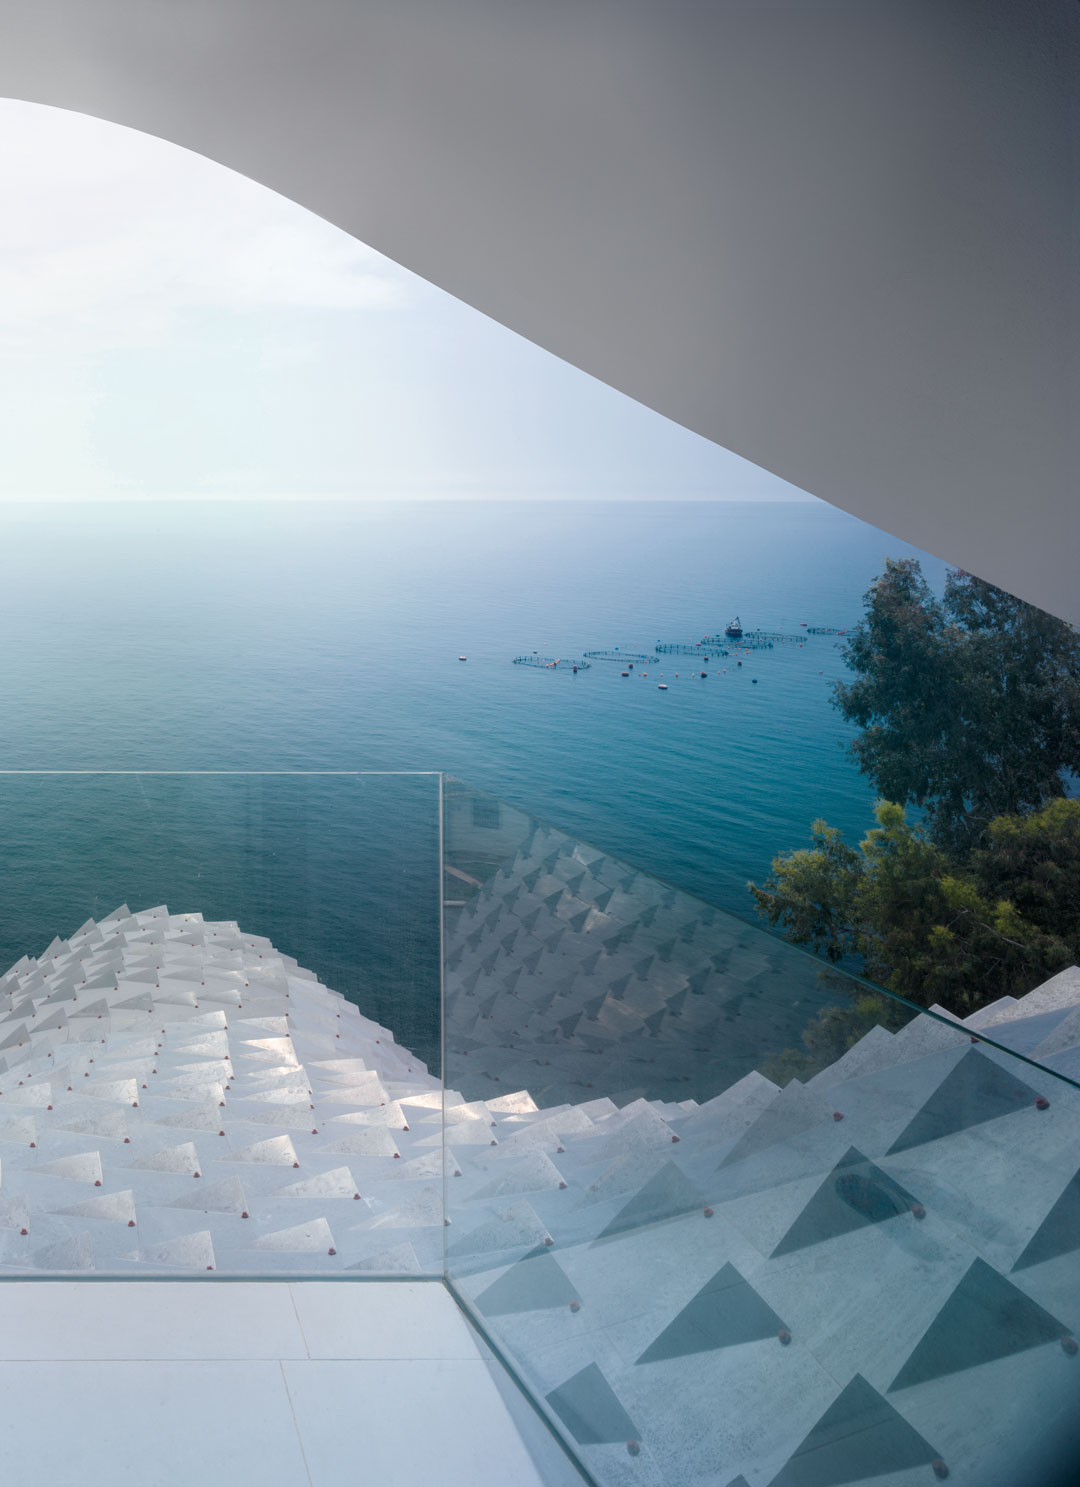 The House on the Cliff (GilBartolomé Architects) 2015, Granada, Spain. Photograph by Jesús Granada